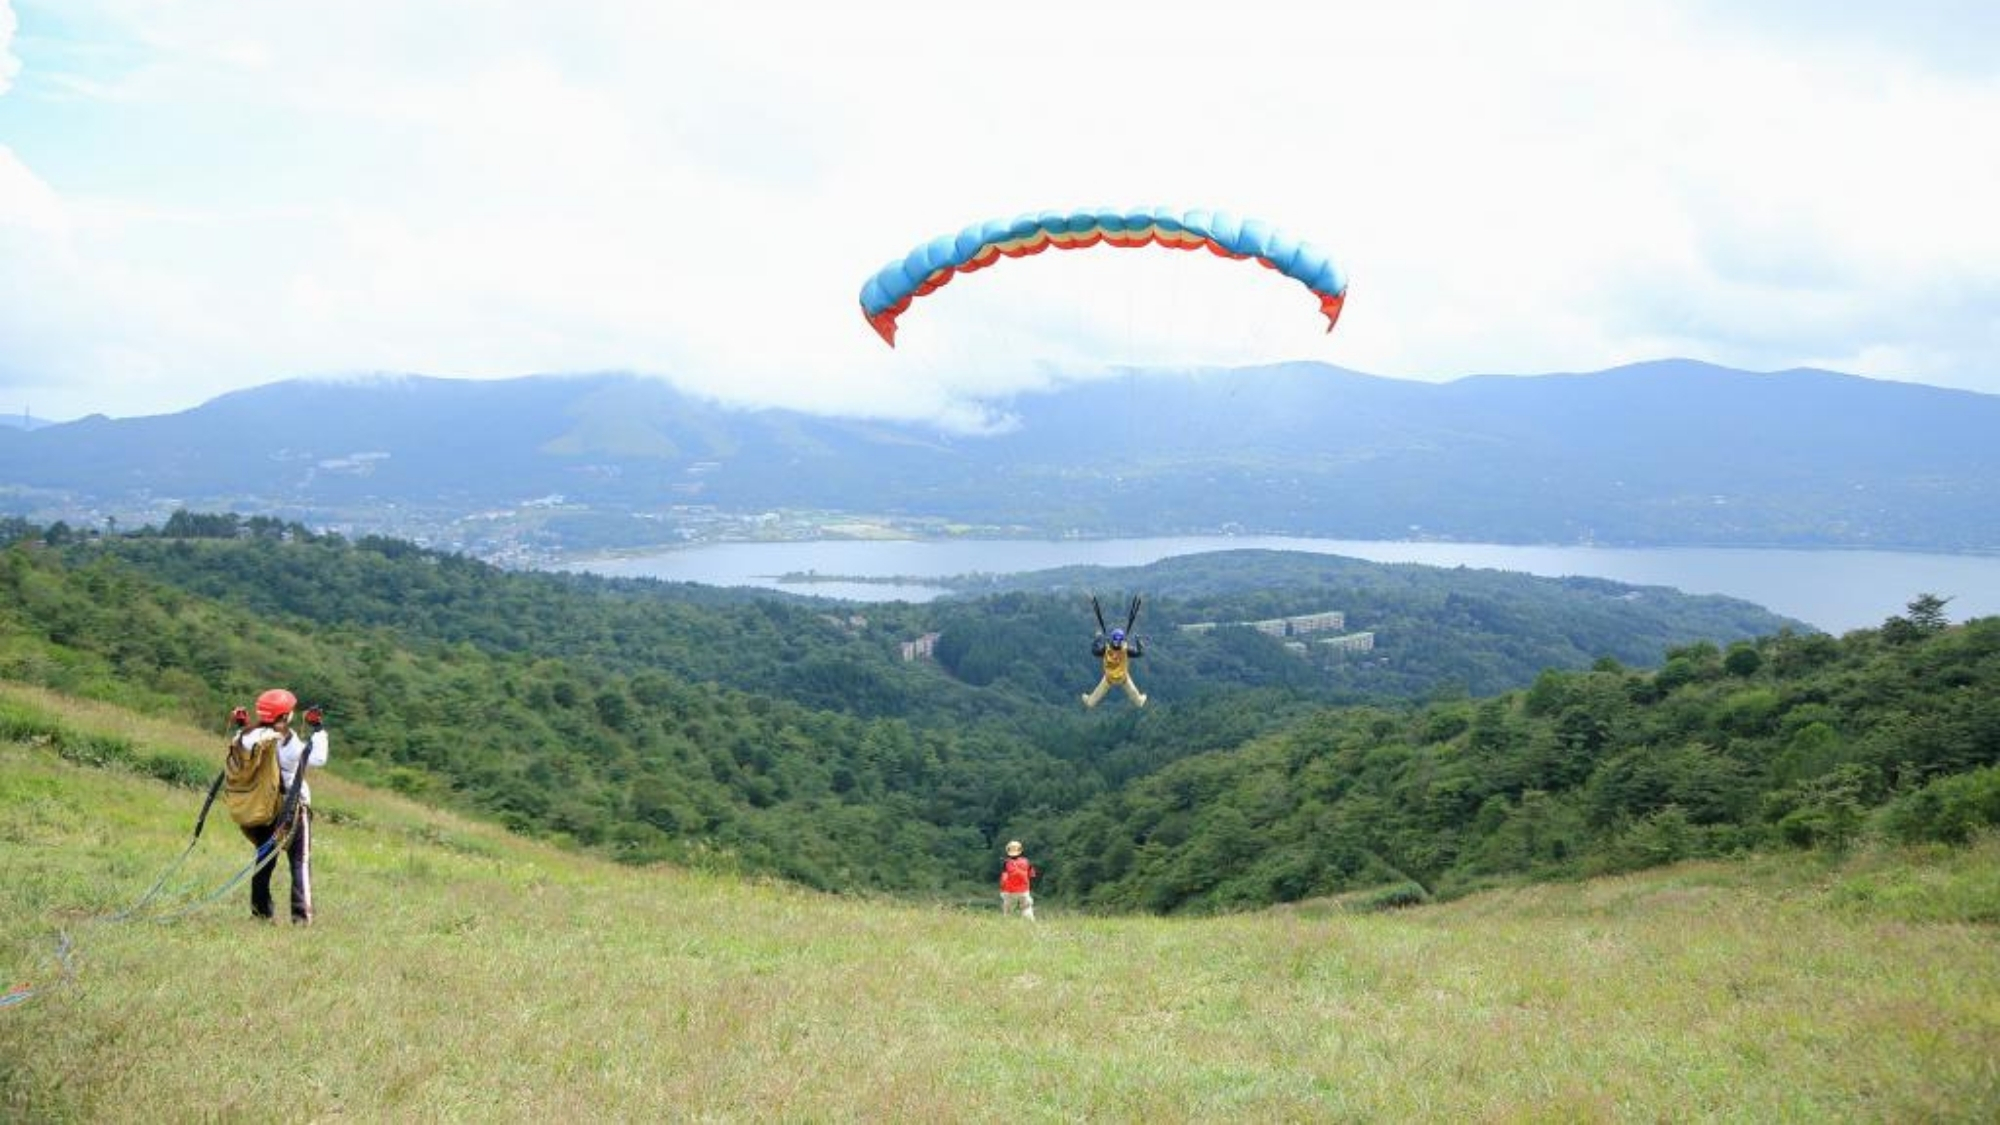  富士山と河口湖を眺めながら大空を飛ぶパラグライダーもぜひ体験してみてください。